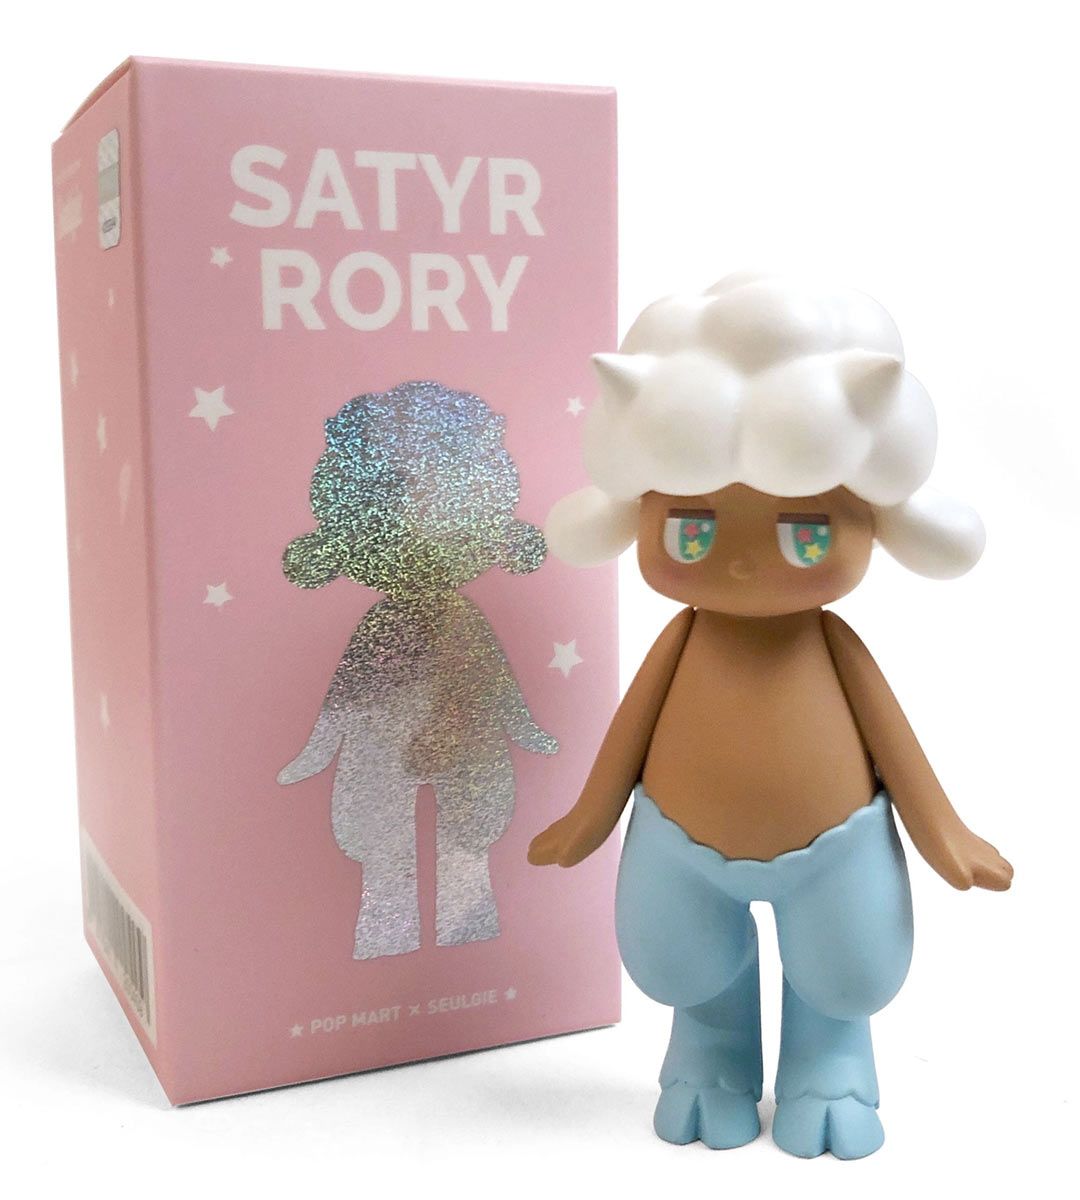 Satyr Rory Series - Seulgie Lee